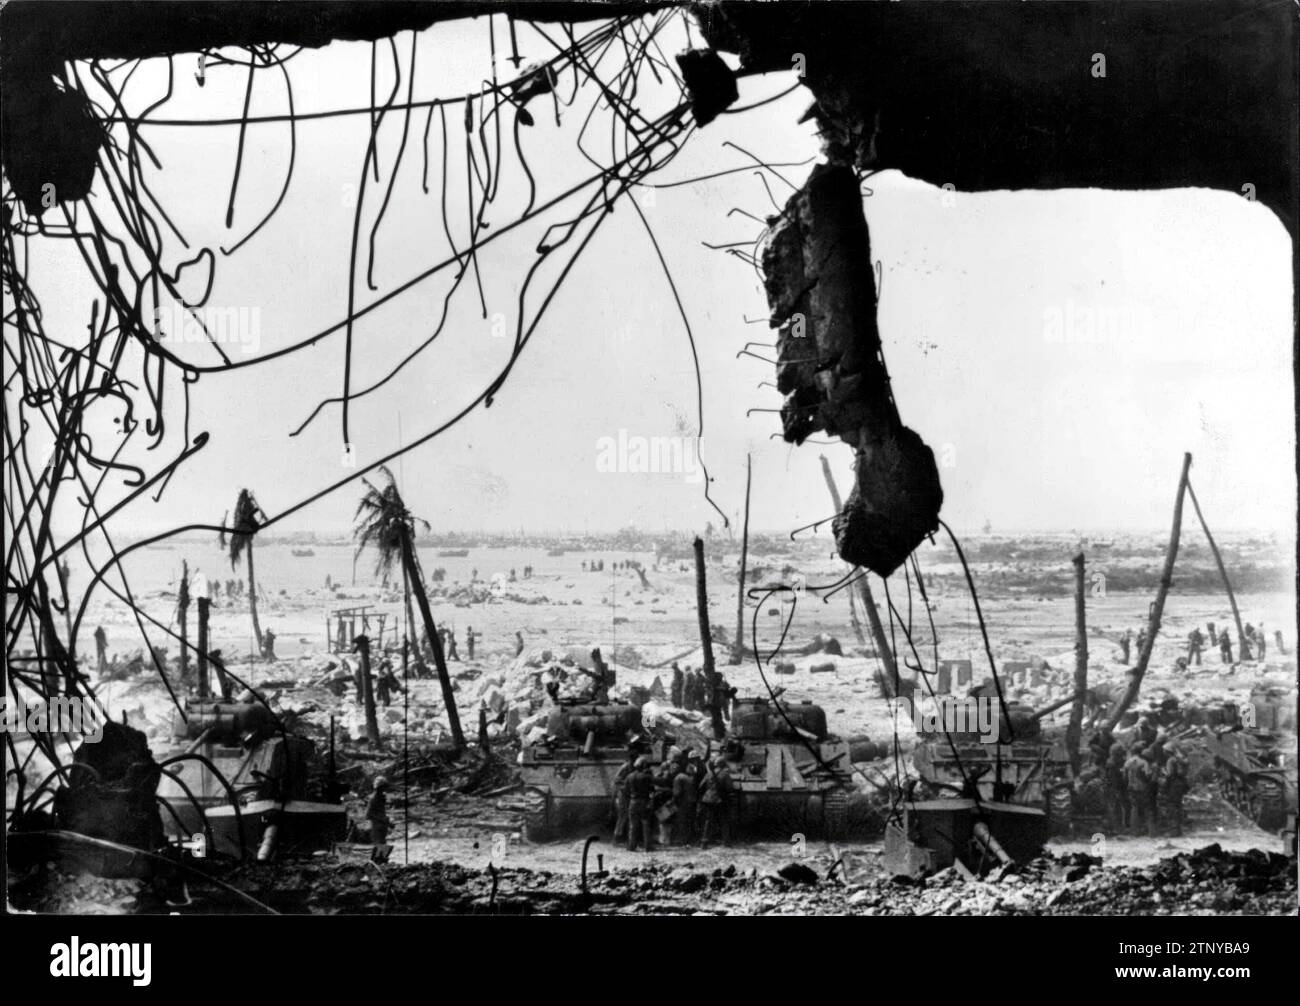 Marshallinseln, Mai 1944. Amerikanische Soldaten entladen während des Zweiten Weltkriegs Vorräte und Material auf der Insel Kwajalein-Atoll Quelle: Album / Archivo ABC / Pando Stockfoto